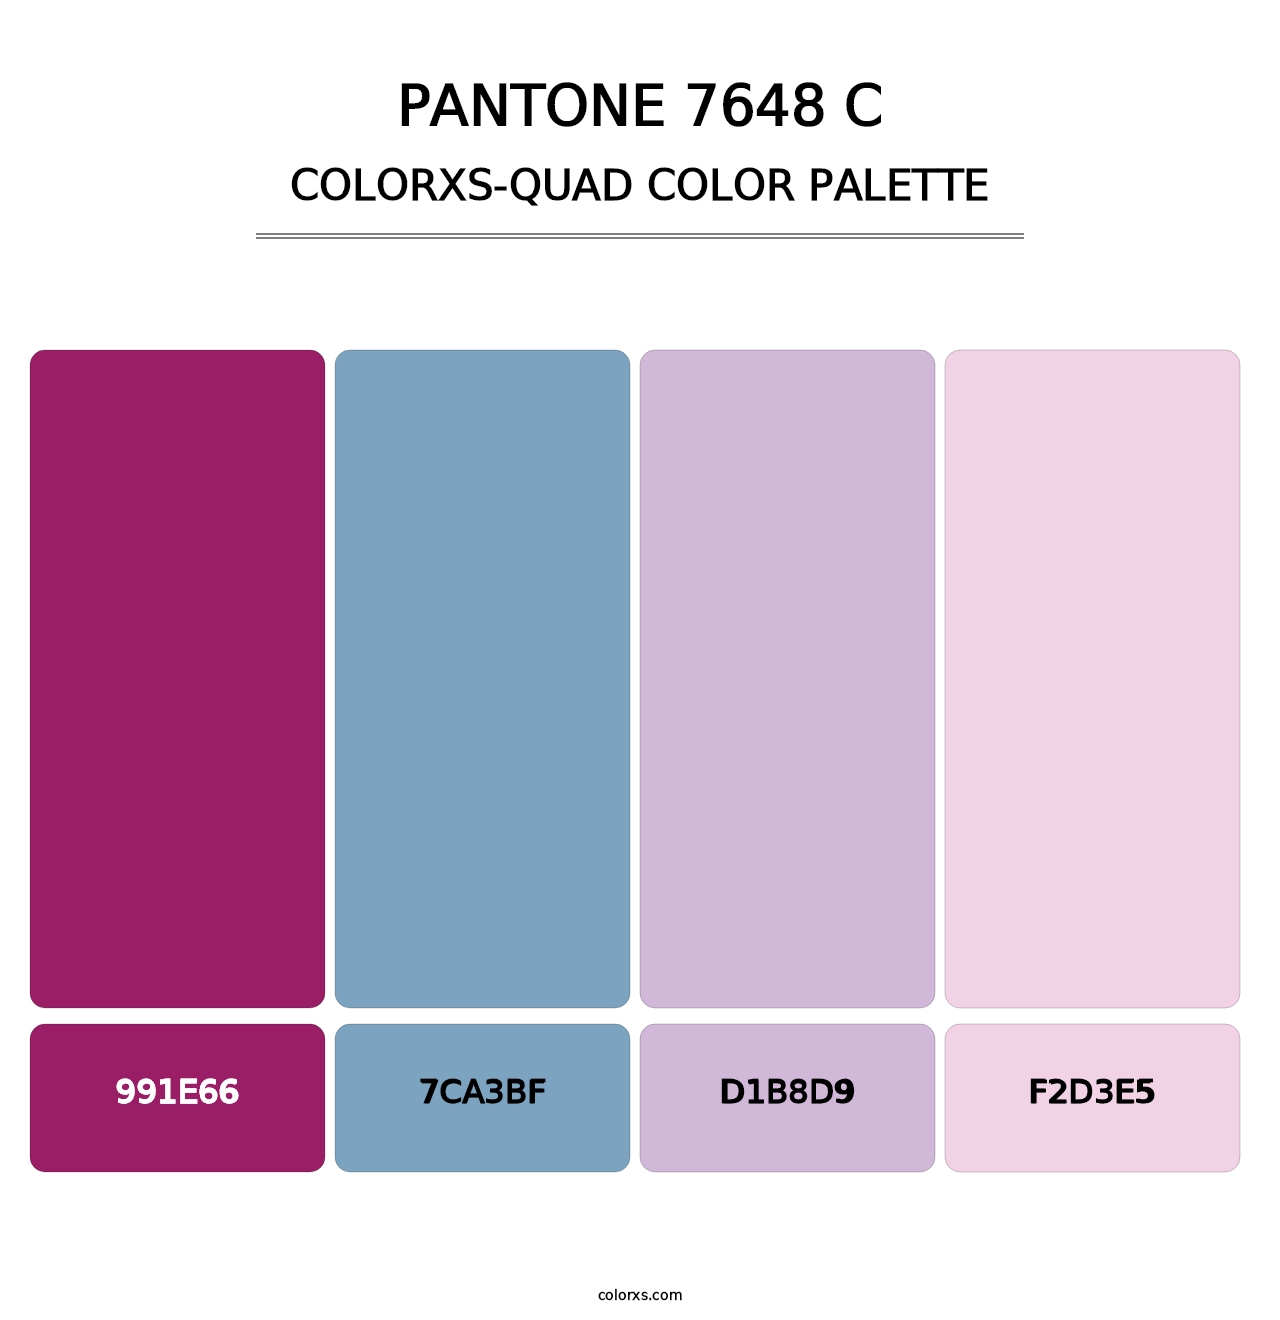 PANTONE 7648 C - Colorxs Quad Palette